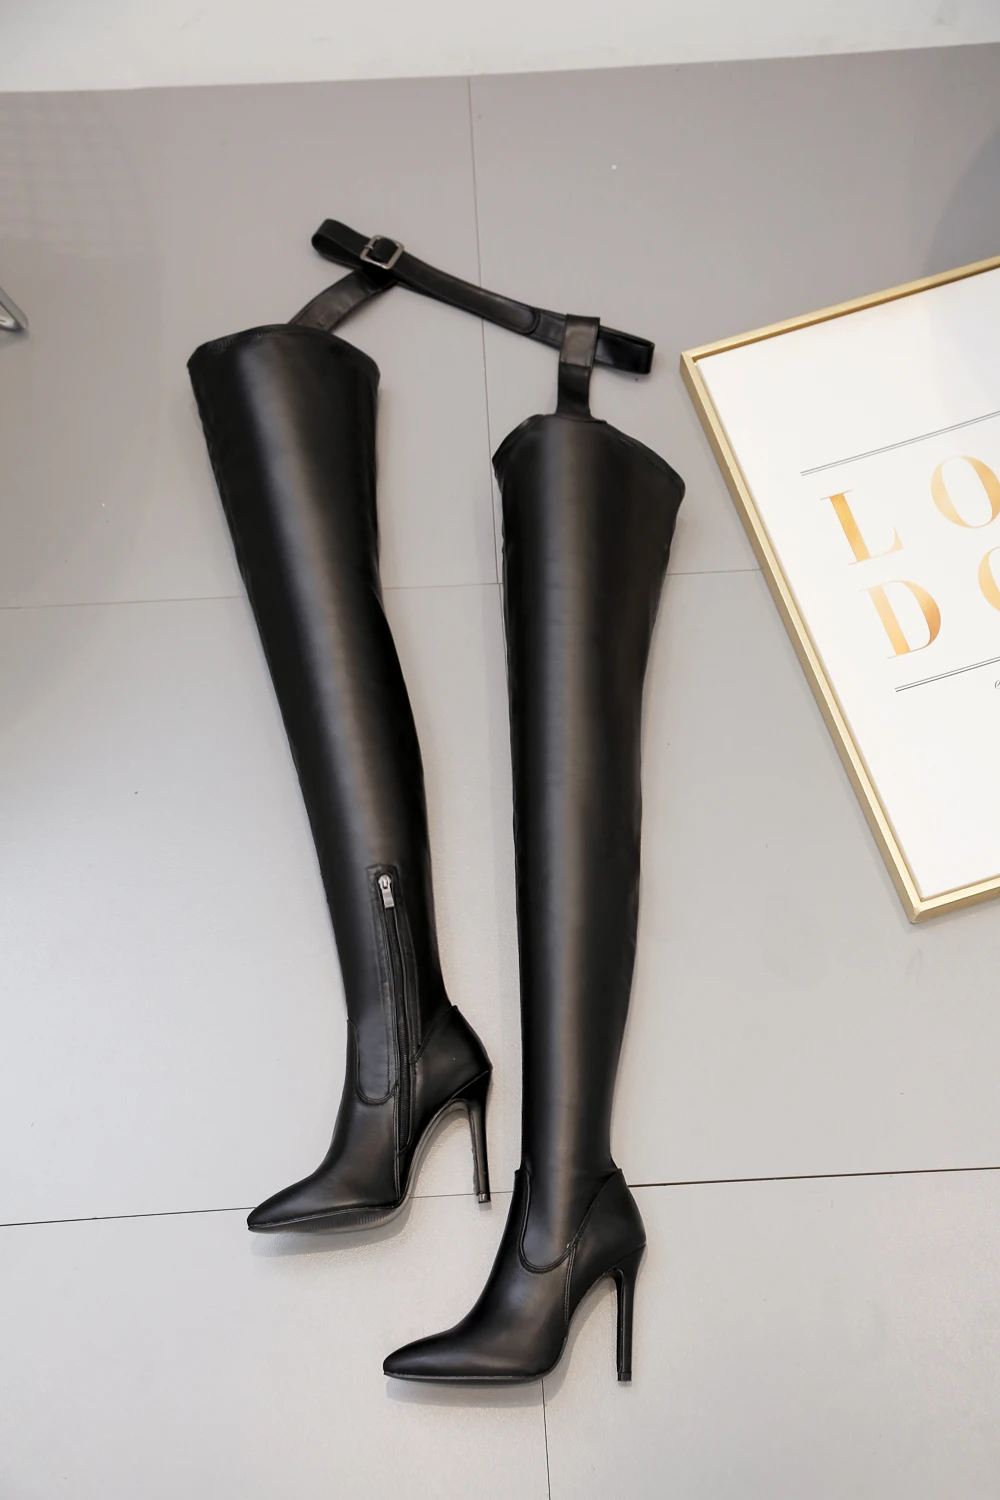 NIUFUNI/ботфорты выше колена из искусственной кожи высокого качества в стиле Рианны; высокие ботинки; пикантные женские ботинки с острым носком, пряжкой и ремешком на молнии